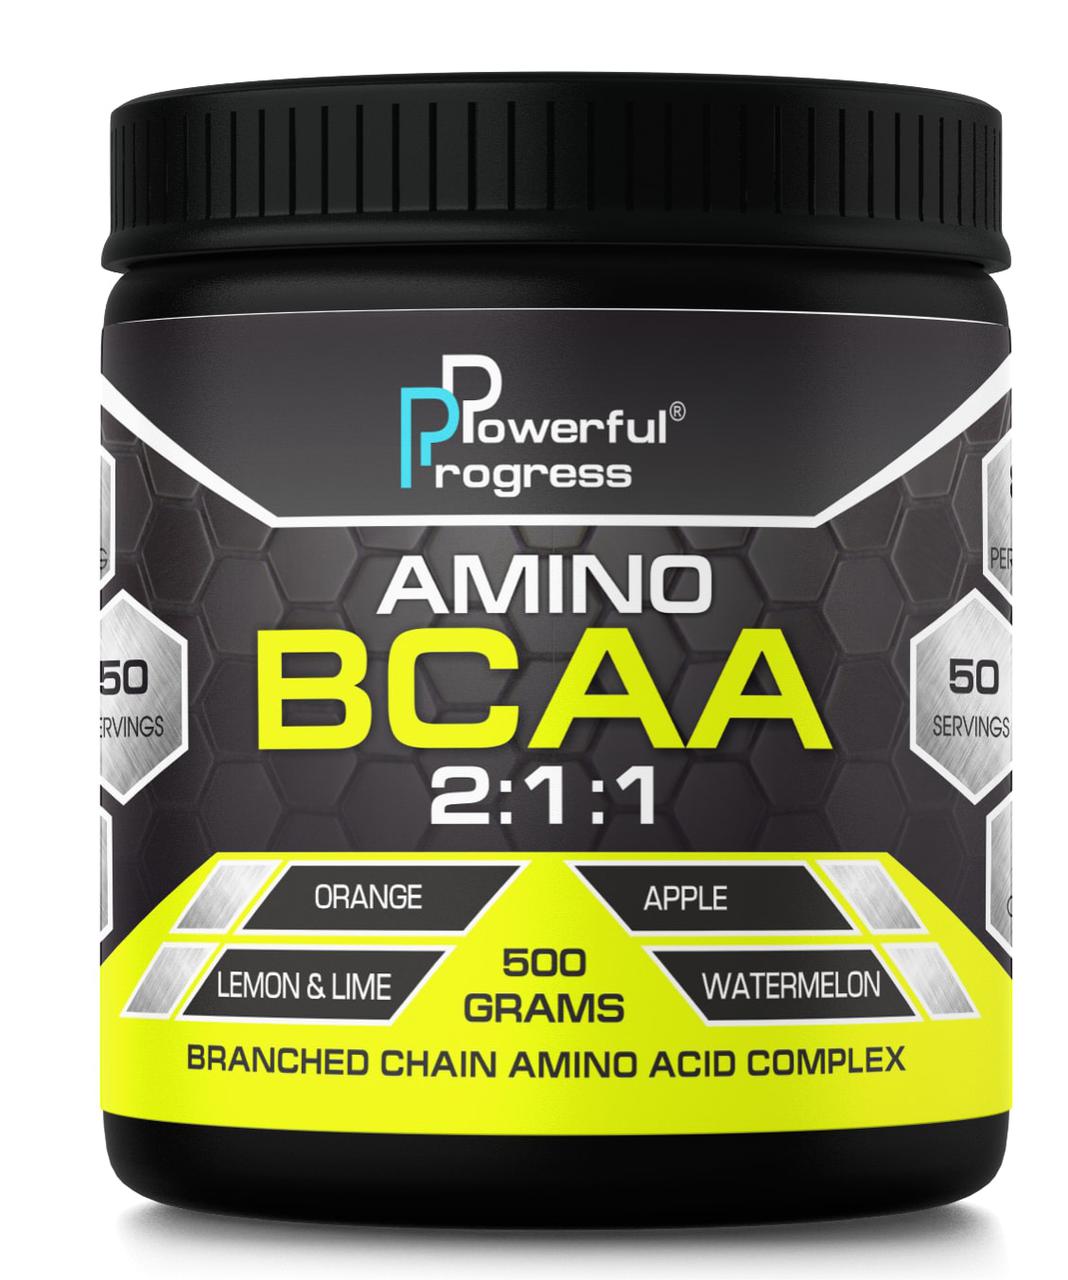 Amino BCAA 2:1:1 Powerful Progress 500 g ,  ml, Powerful Progress. BCAA. Weight Loss recovery Anti-catabolic properties Lean muscle mass 